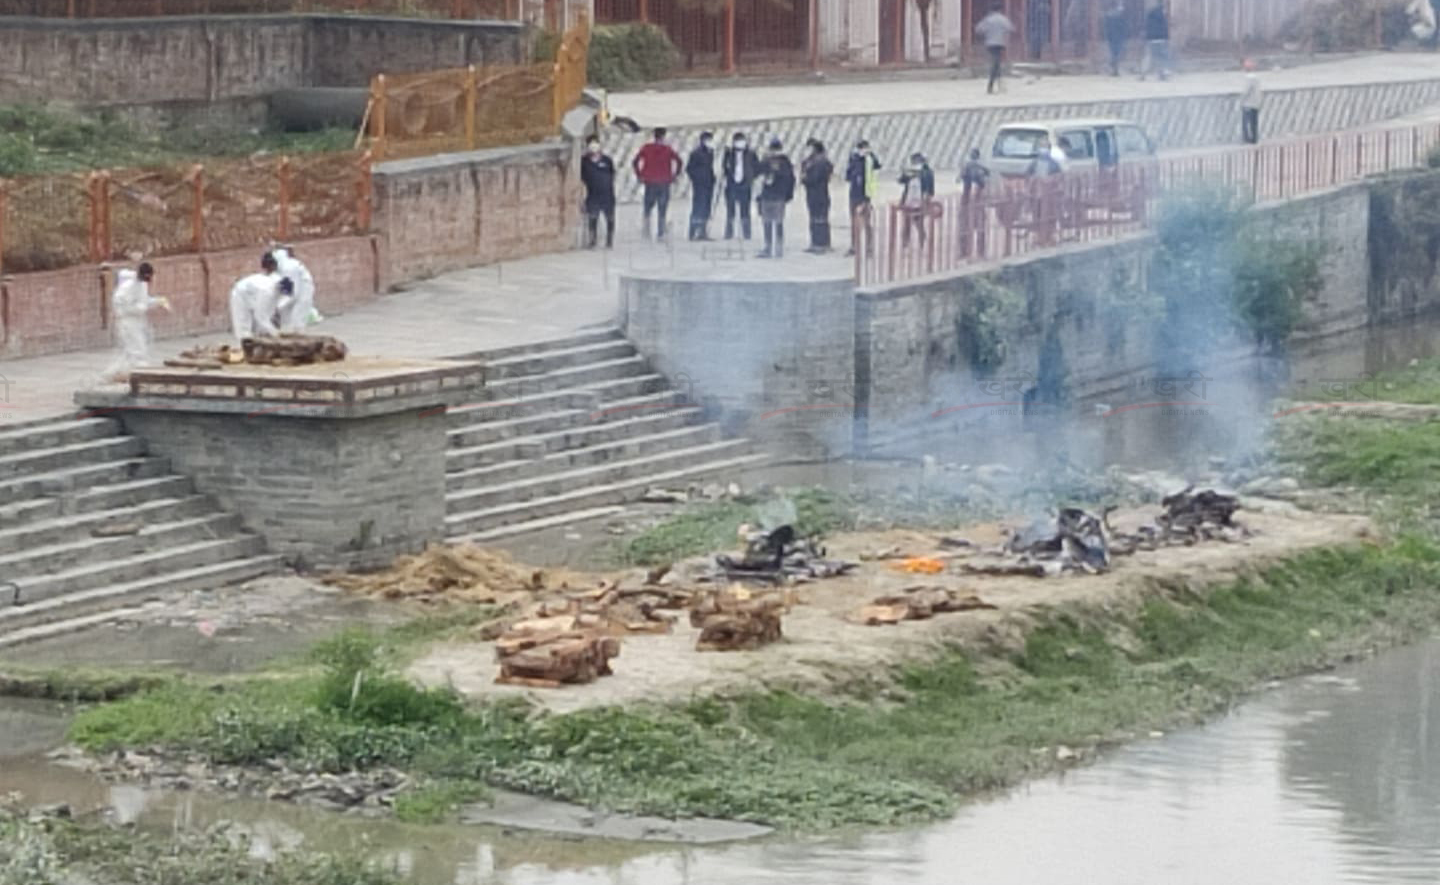 मृत्युदर निकै बढ्यो, सामूहिक शवदाहमा जानुपर्ने अवस्था आउन सक्छ : नेपाली सेना